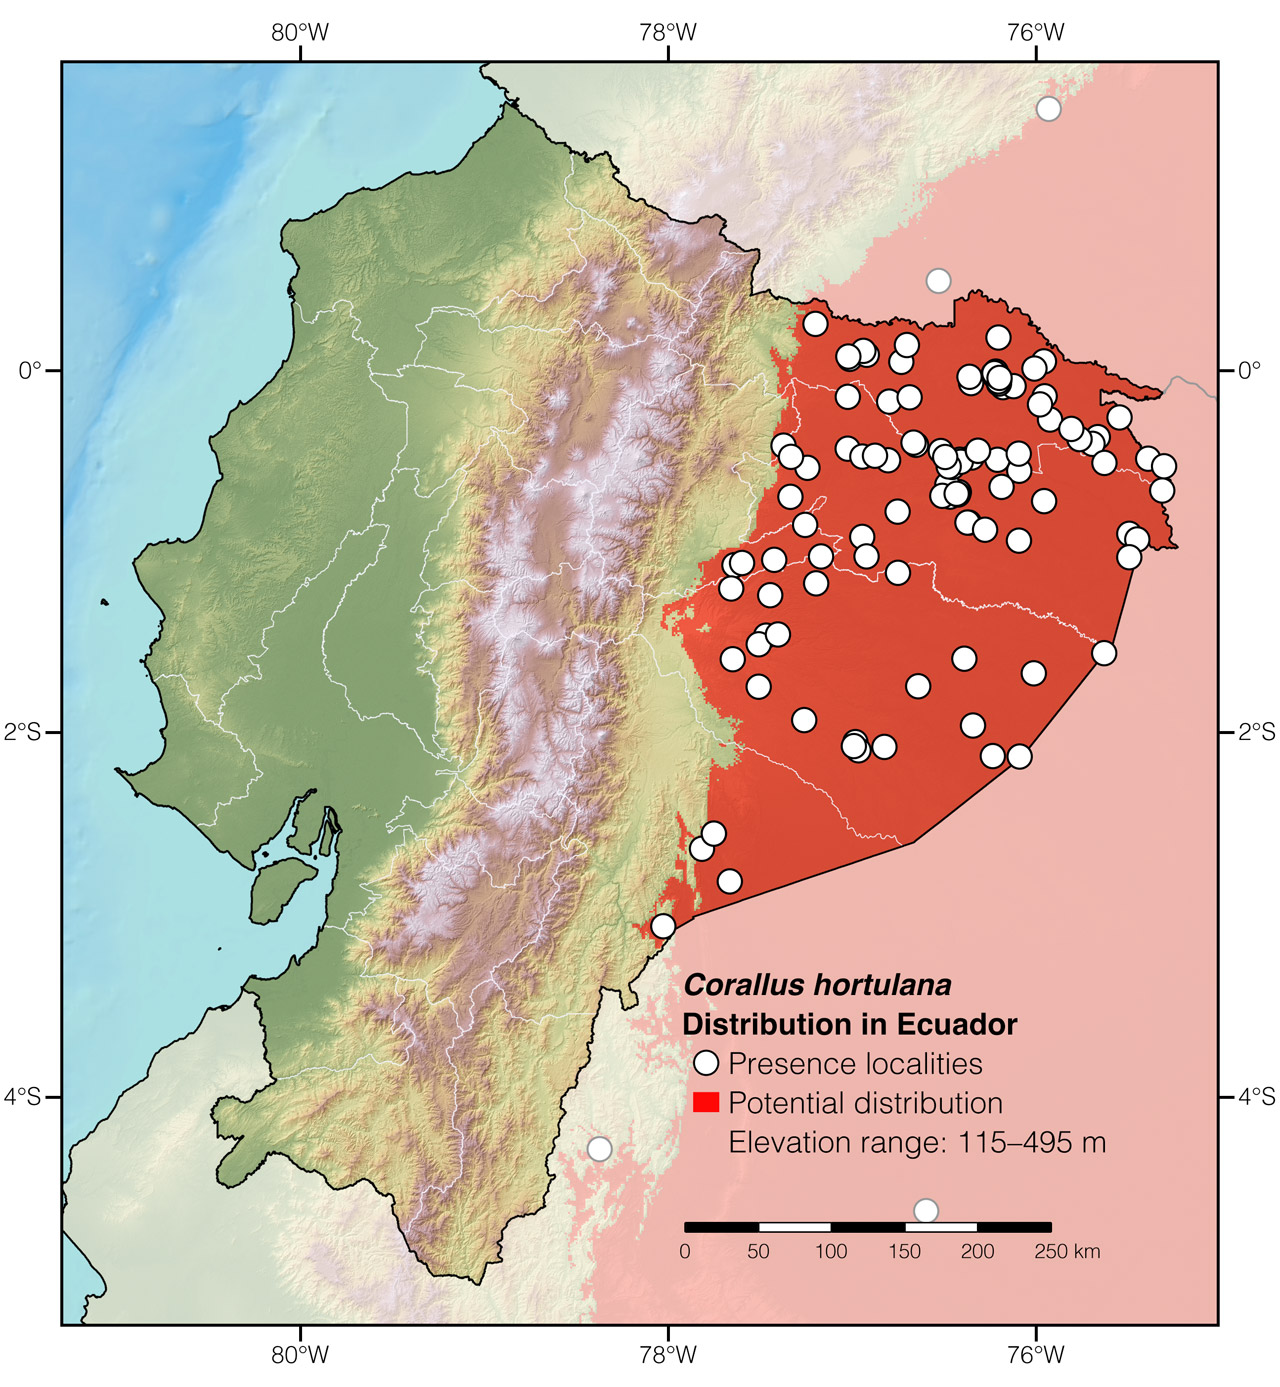 Distribution of Corallus hortulana in Ecuador